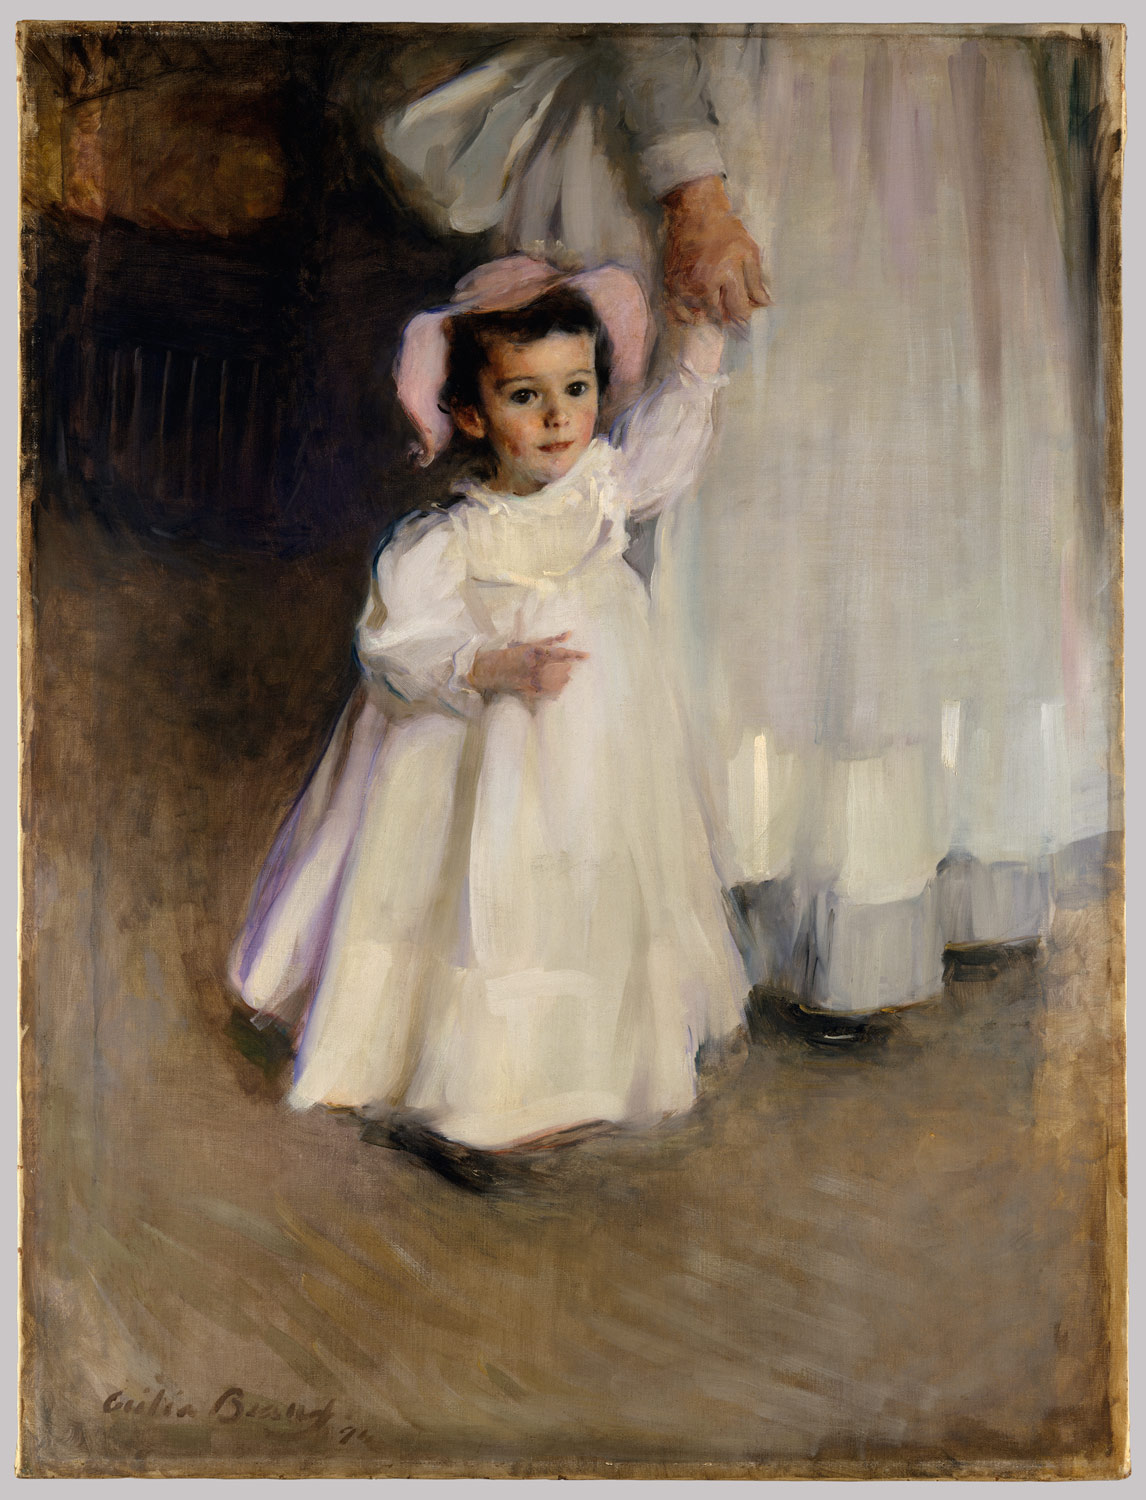 埃內斯塔（小孩和保姆） by Cecilia Beaux - 1894 年 - 128.3 x 96.8 釐米 